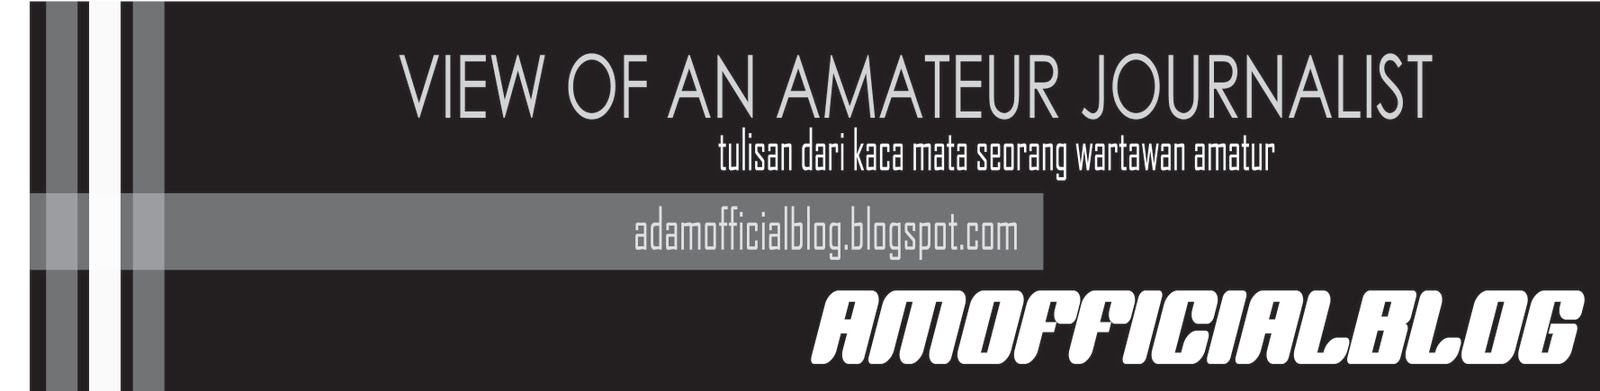 adamofficial blog